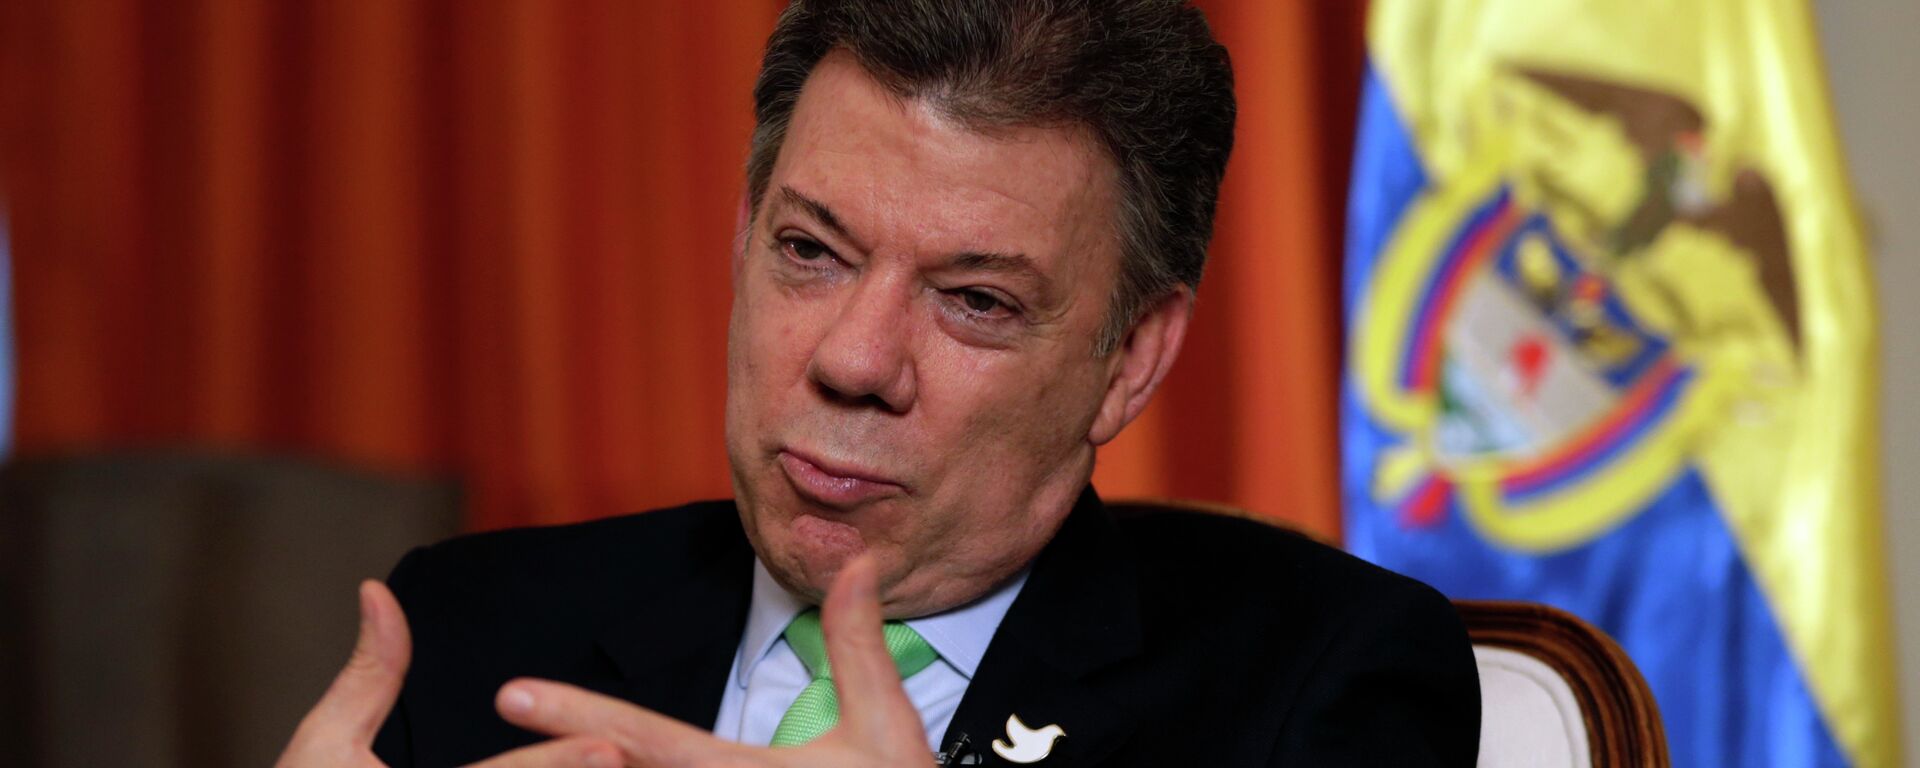 El ex mandatario colombiano Juan Manuel Santos (2010-2018)  - Sputnik Mundo, 1920, 19.03.2021